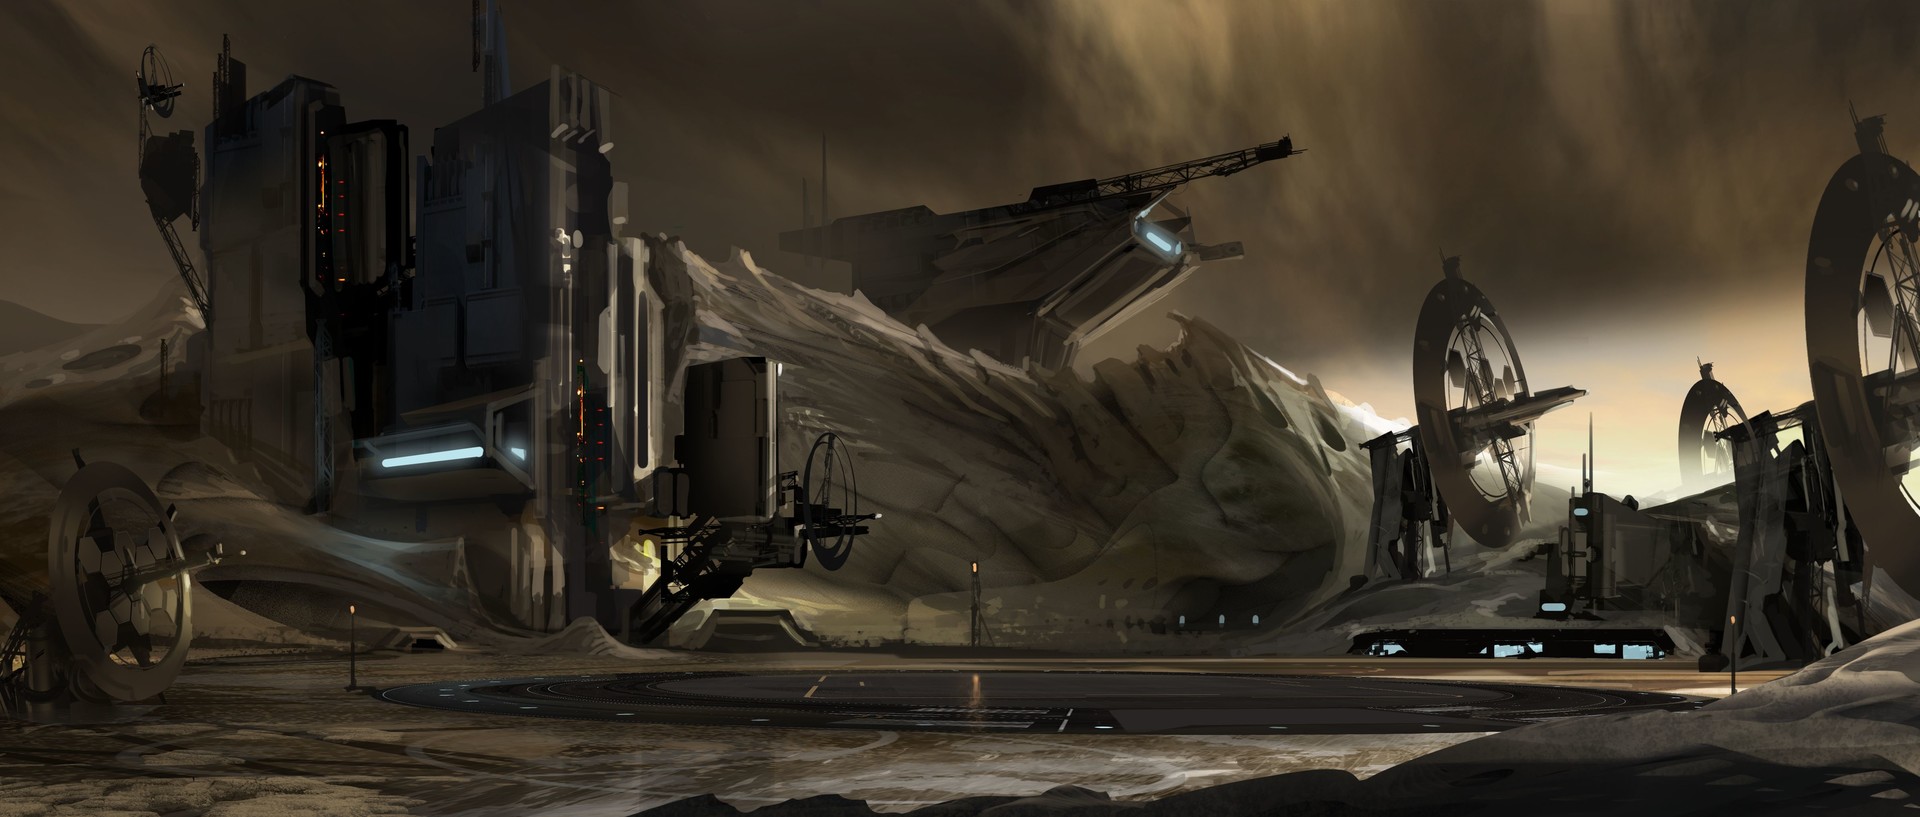 电影 Ender's Game 概念艺术作品-David Levy-22.jpg